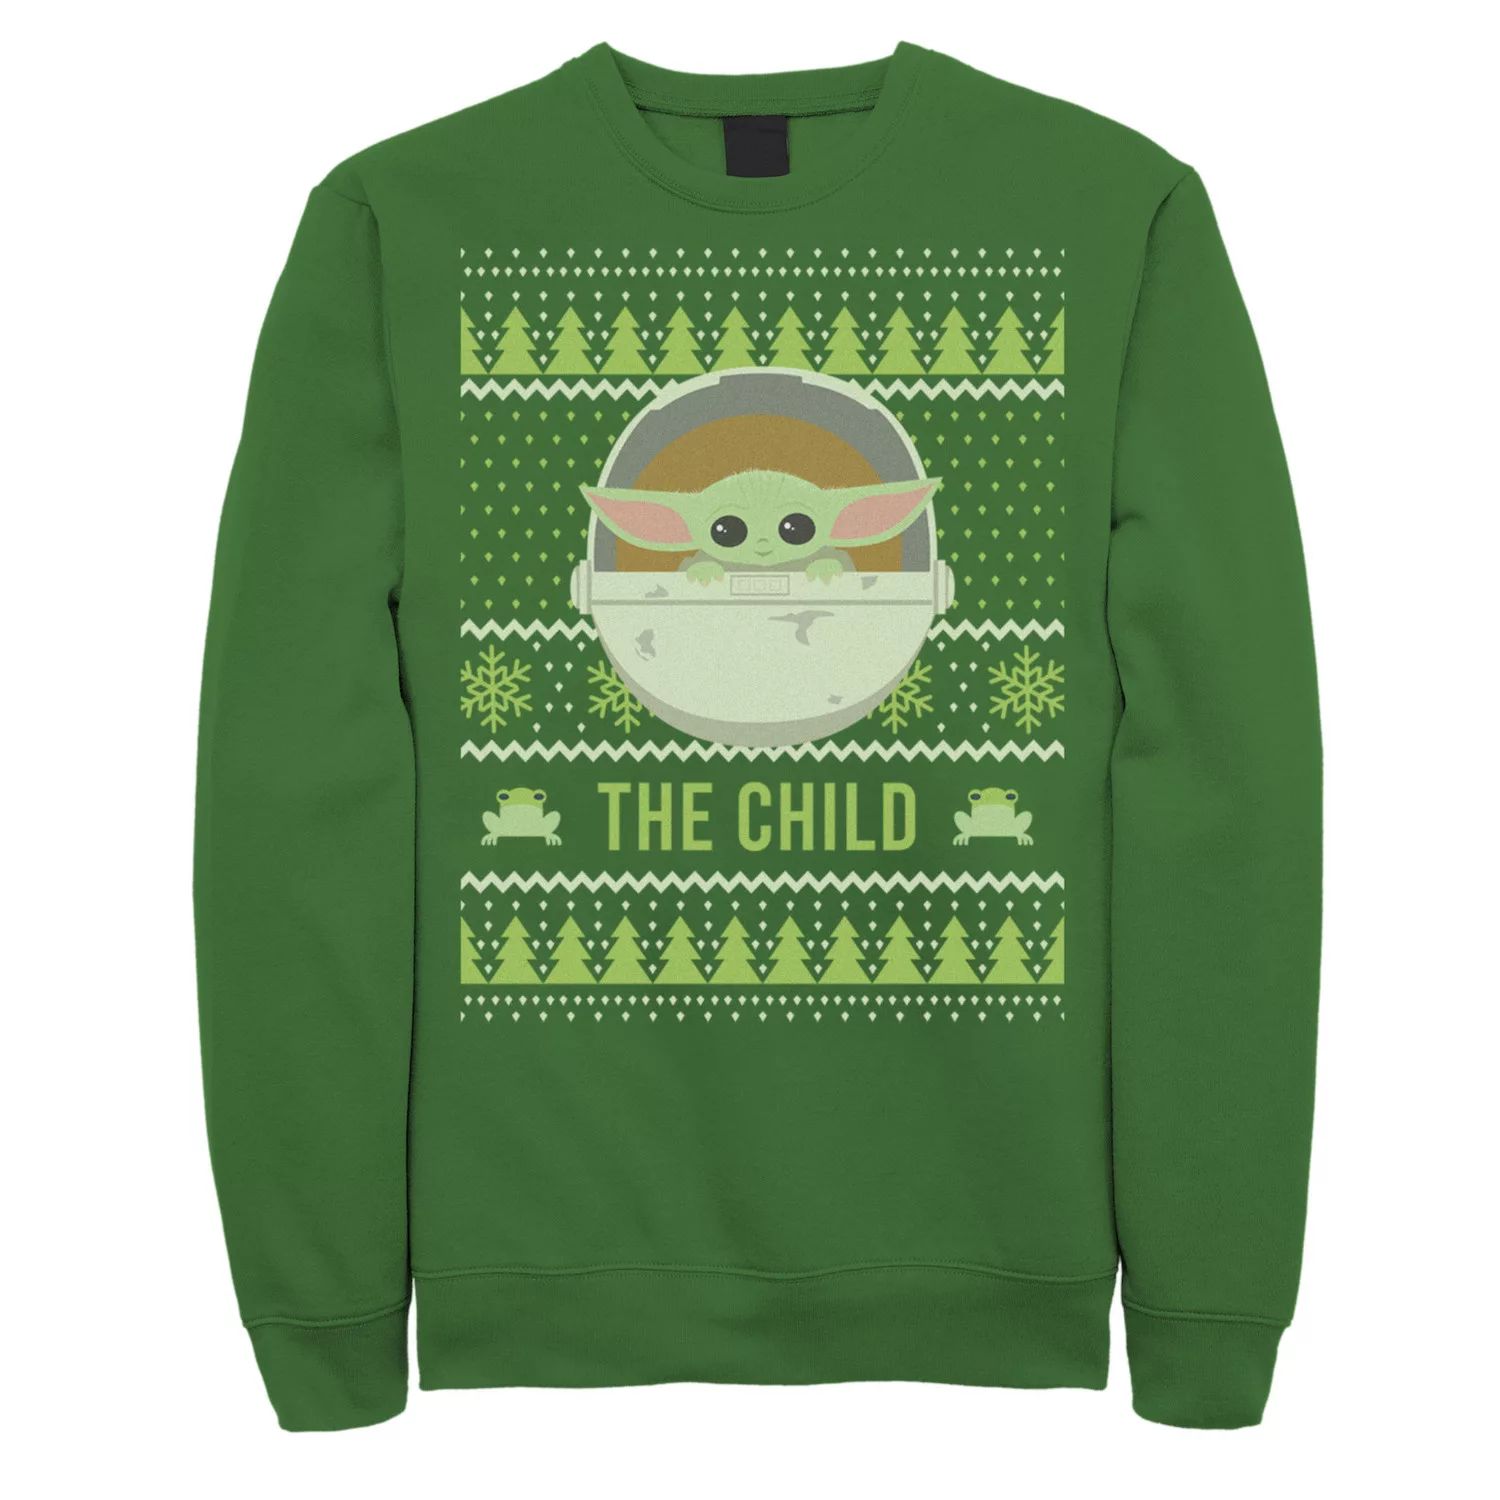 Мужской свитер в рождественском стиле с изображением Мандалорца «Звездные войны» и «Детский ребенок» Licensed Character